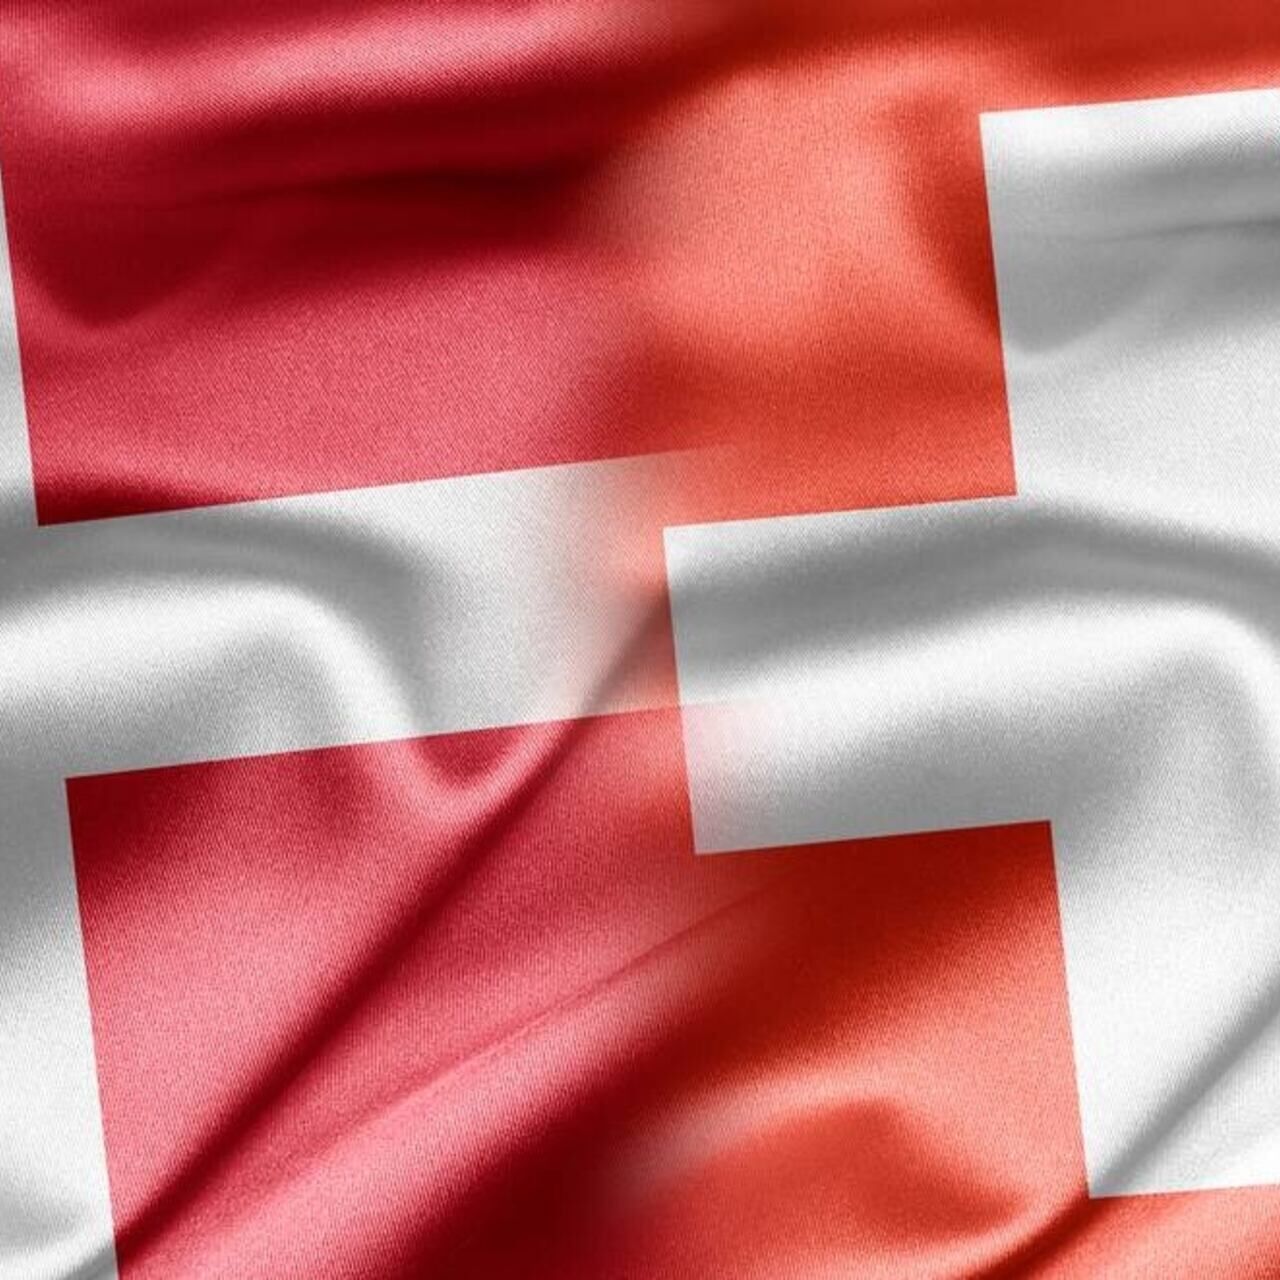 Швейцария Дания: графическое слияние флагов Конфедерации и Королевства.